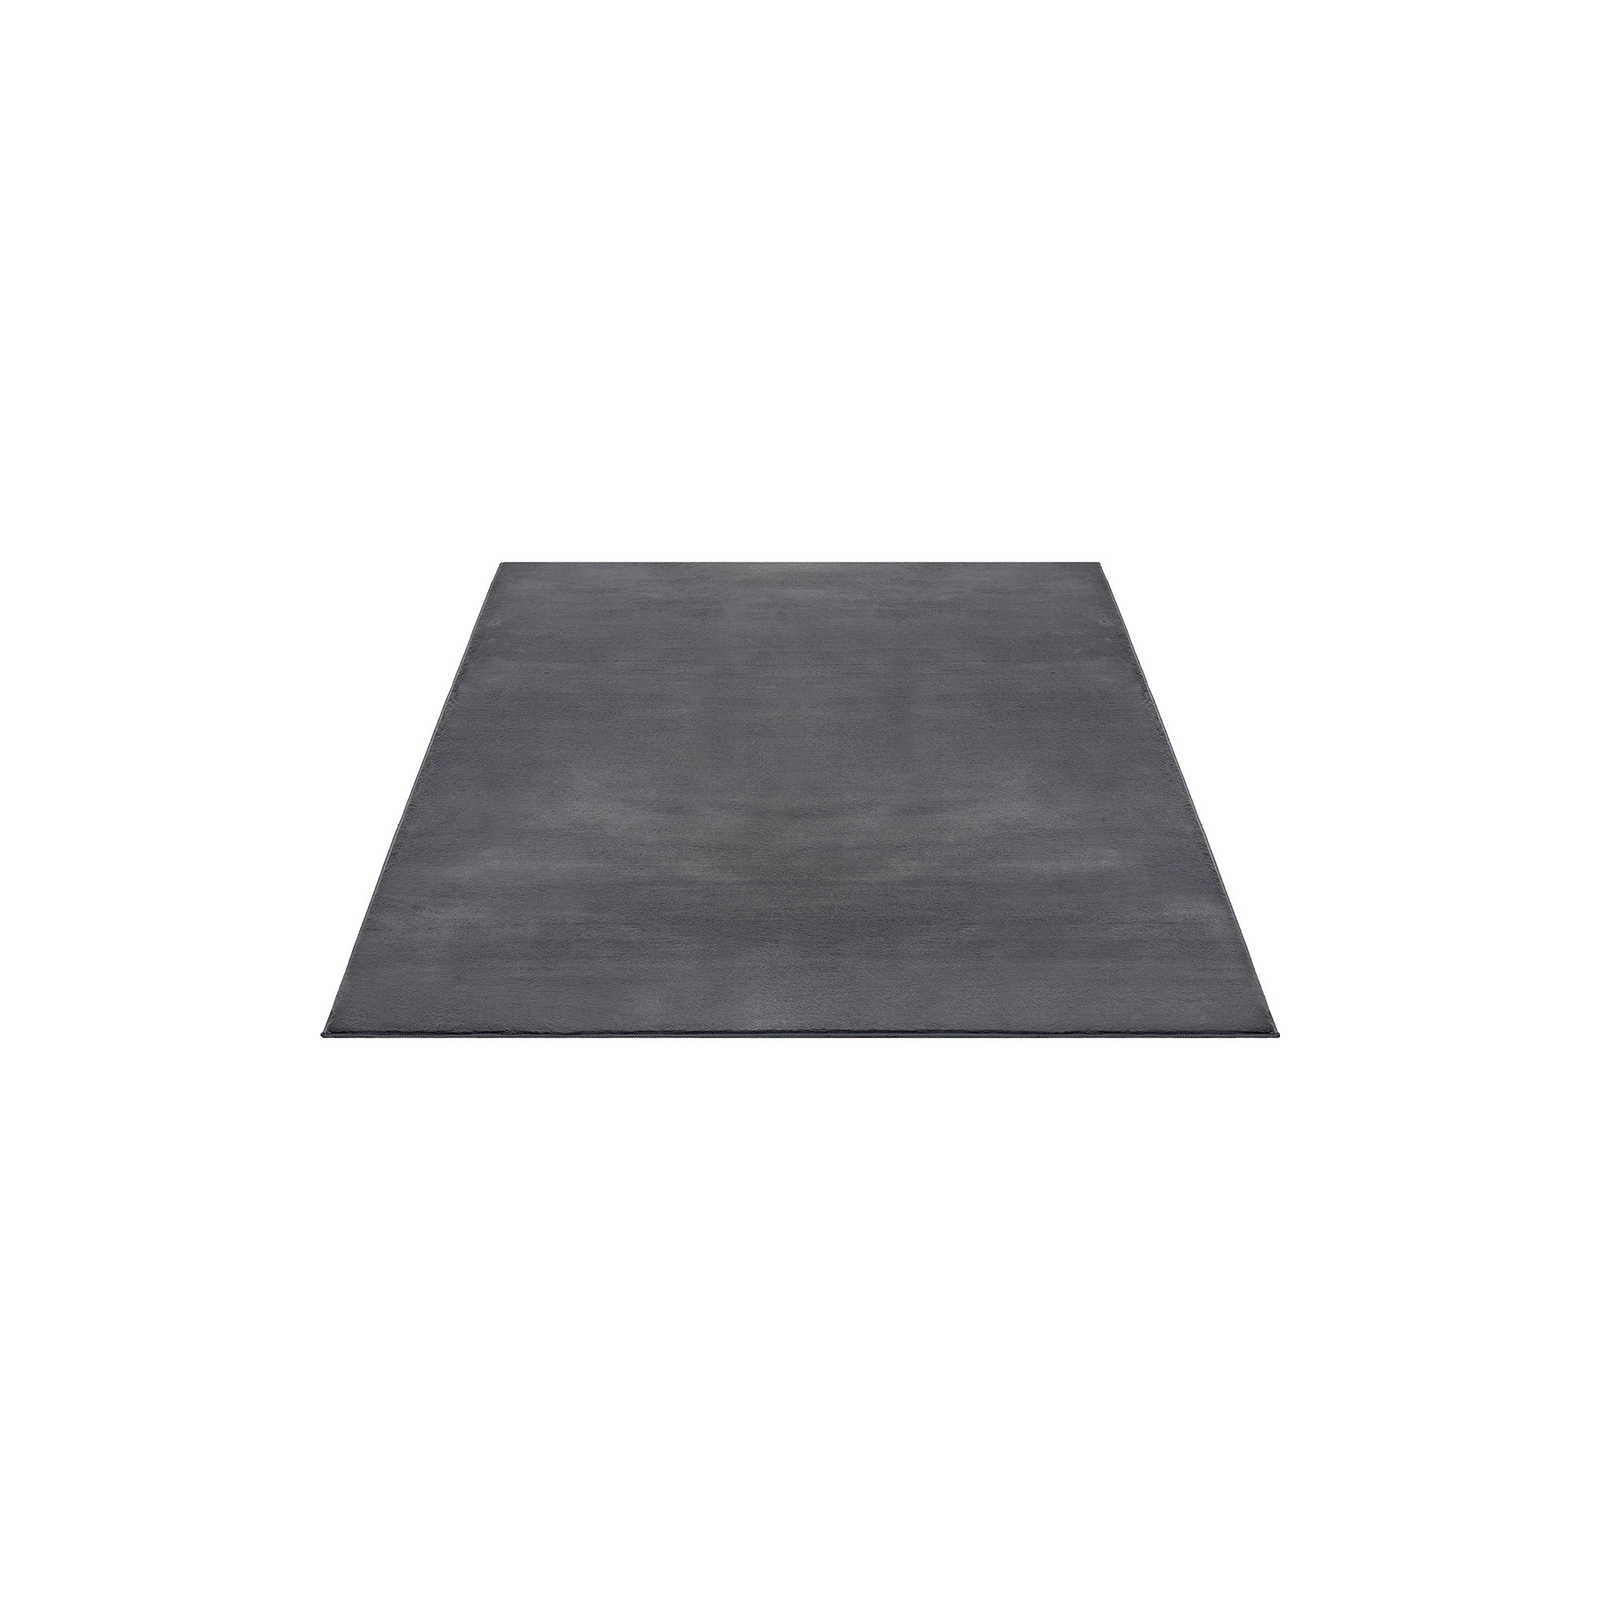 Zacht hoogpolig tapijt in antraciet - 200 x 140 cm
